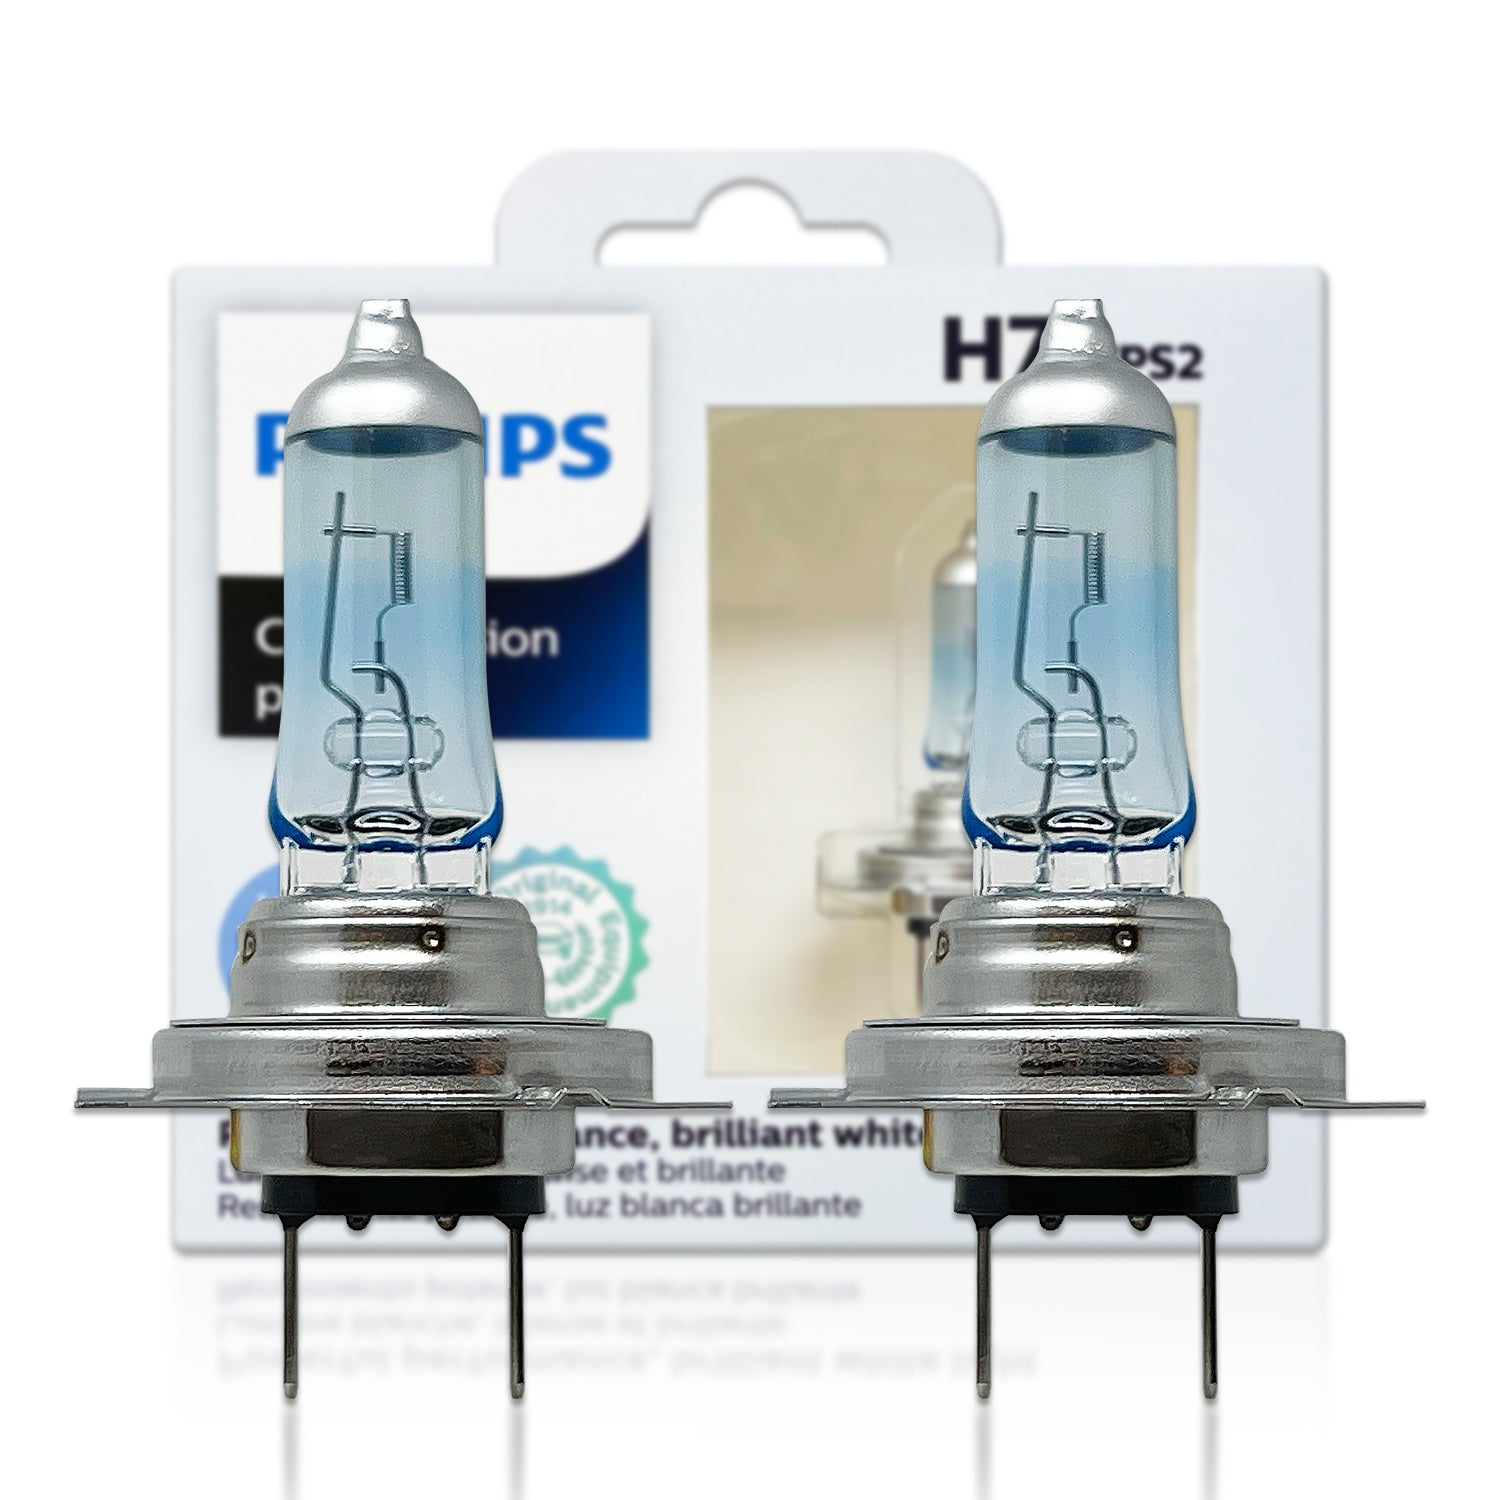 2 lámparas H7 OSRAM Night Breaker® 200 - 64210NB200-HCB